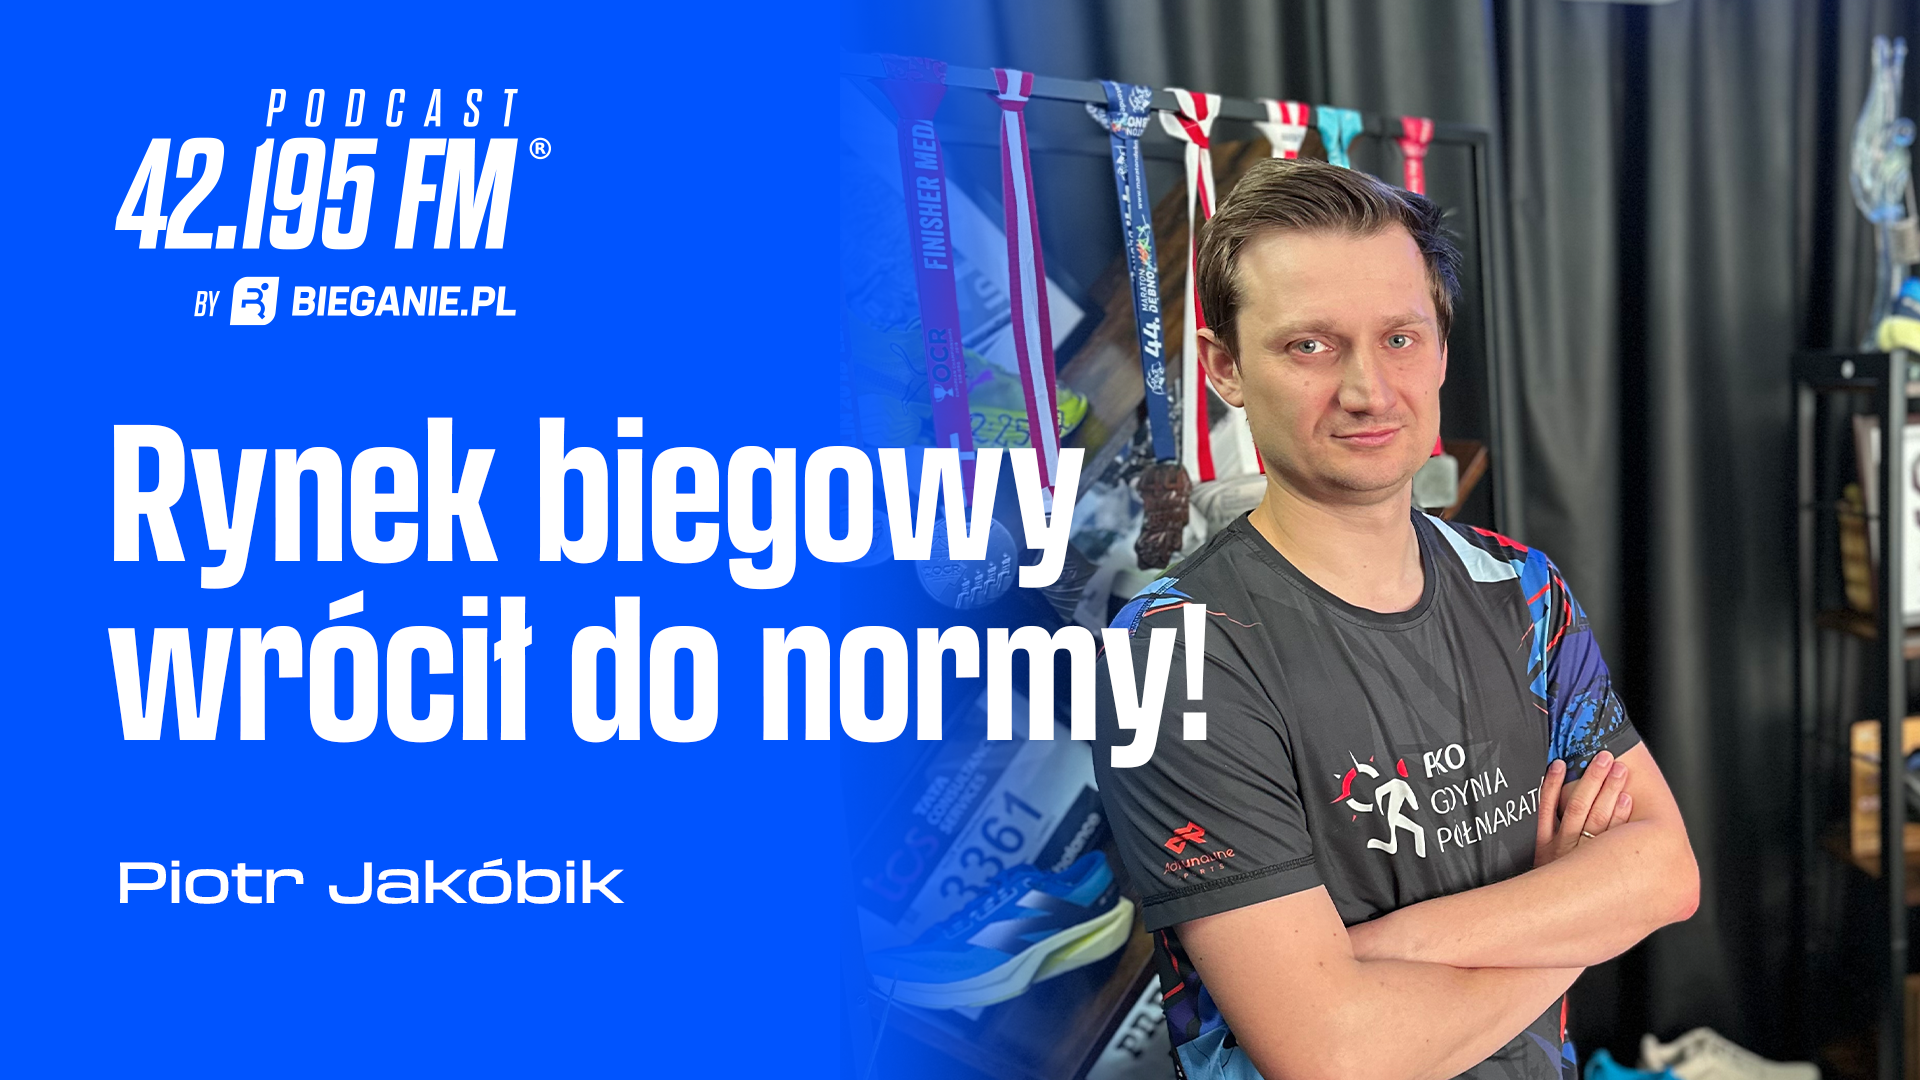 Rynek biegowy wrócił do normy - Podcast Bieganie.pl - Bieganie.pl